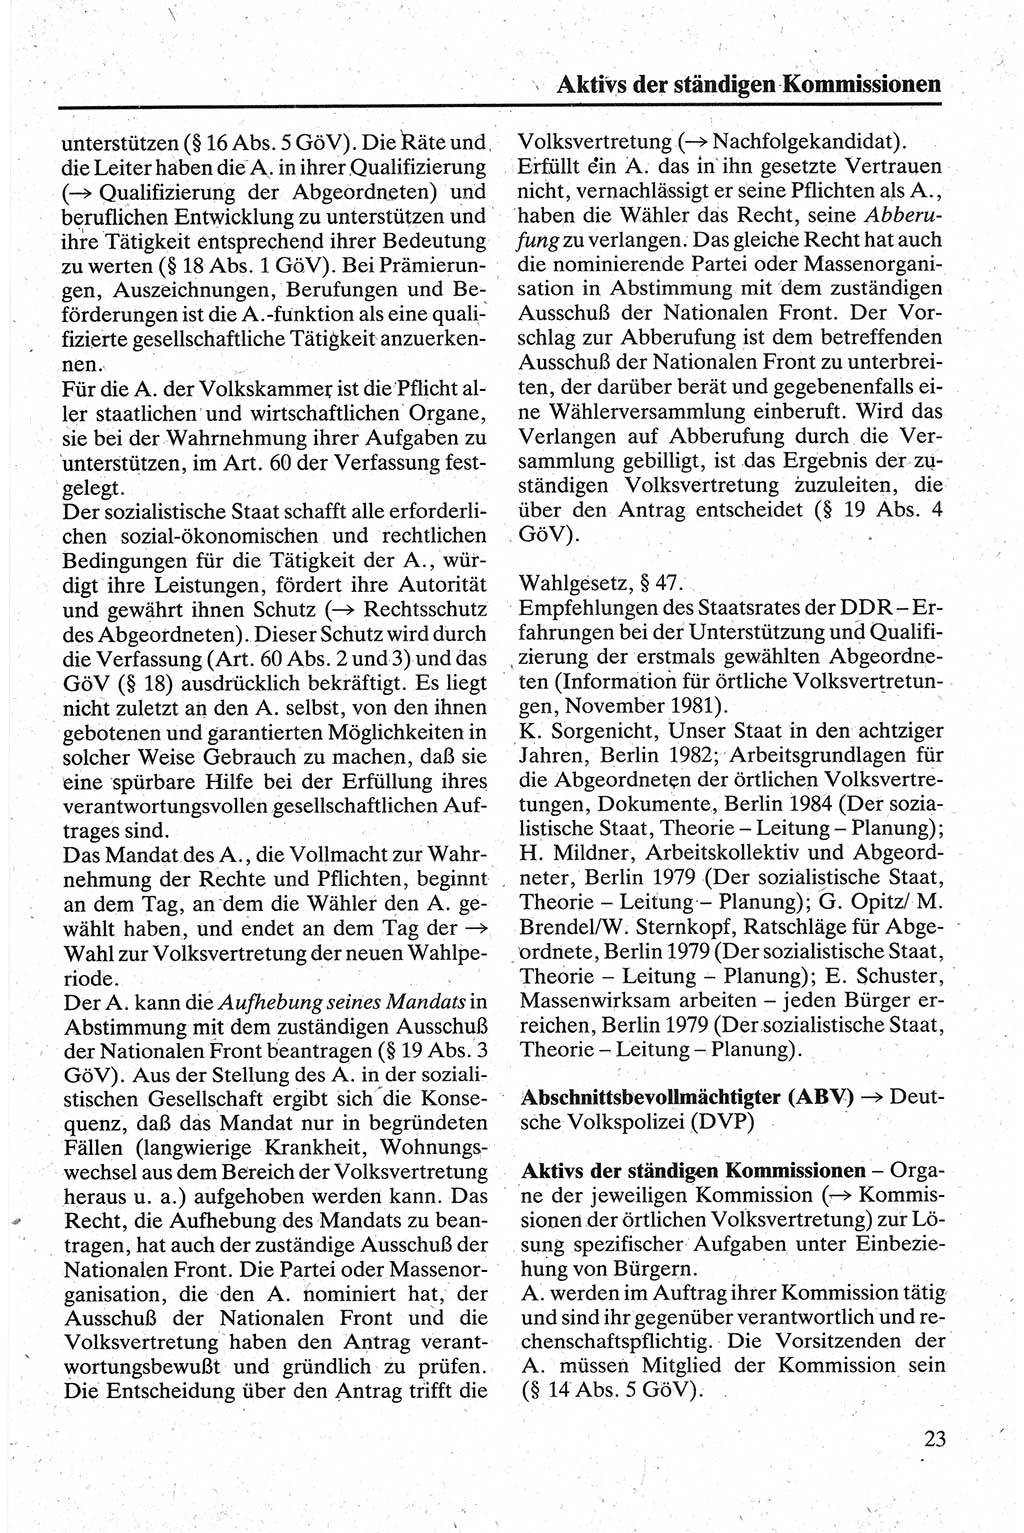 Handbuch für den Abgeordneten [Deutsche Demokratische Republik (DDR)] 1984, Seite 23 (Hb. Abg. DDR 1984, S. 23)